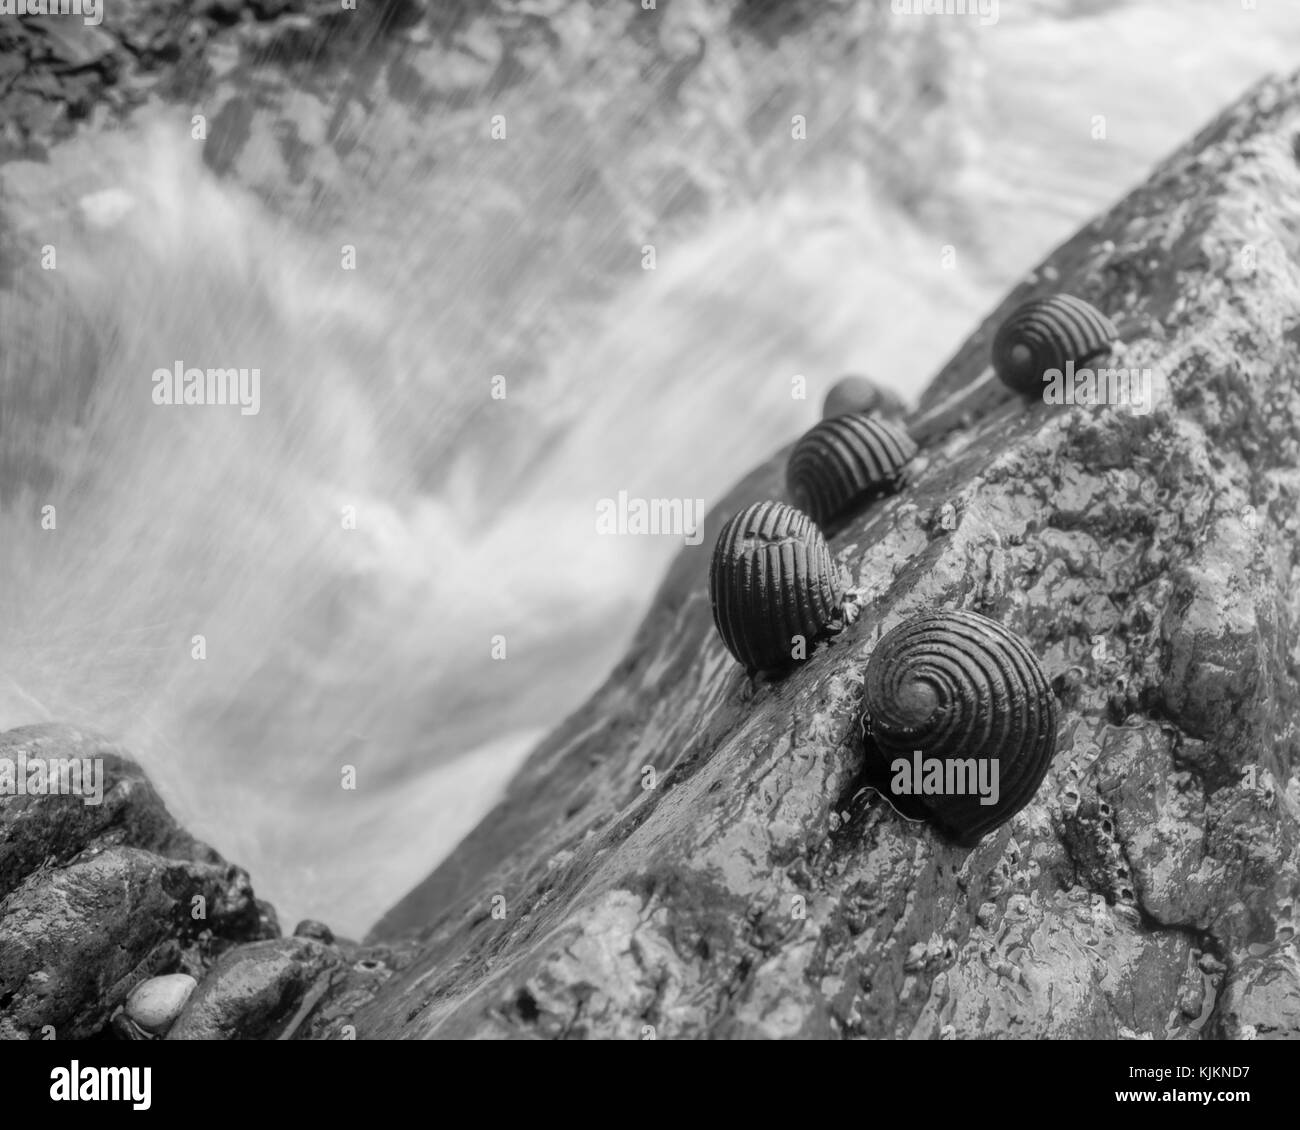 Lumache di mare seduti su una roccia come le onde si infrangono in essa; foto scattata a Koh Lanta, Thailandia. Foto Stock